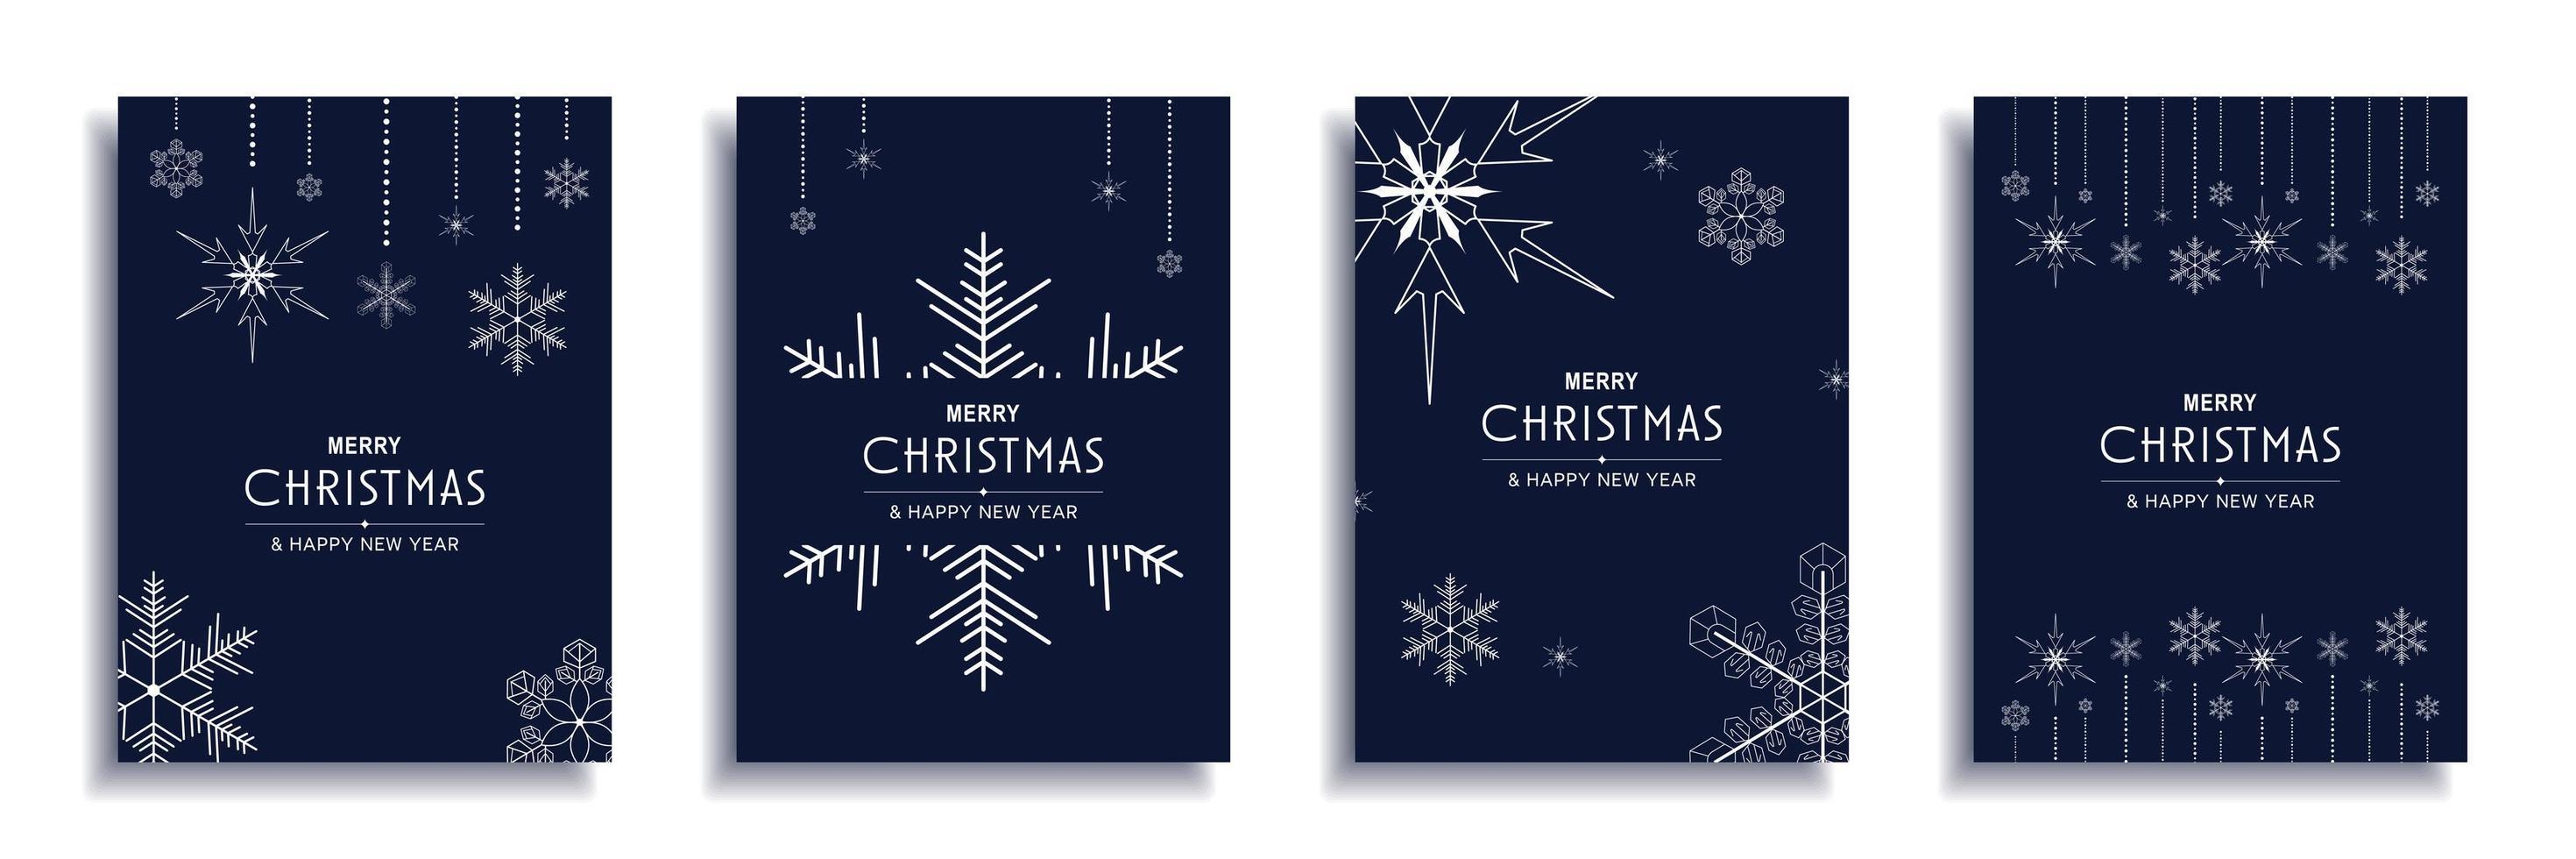 vrolijk kerstfeest en nieuwjaar 2022 brochure covers set. xmas minimaal bannerontwerp met witte sneeuwvlokken decoratieve randen op blauwe achtergronden. vectorillustratie voor flyer, poster of wenskaart vector